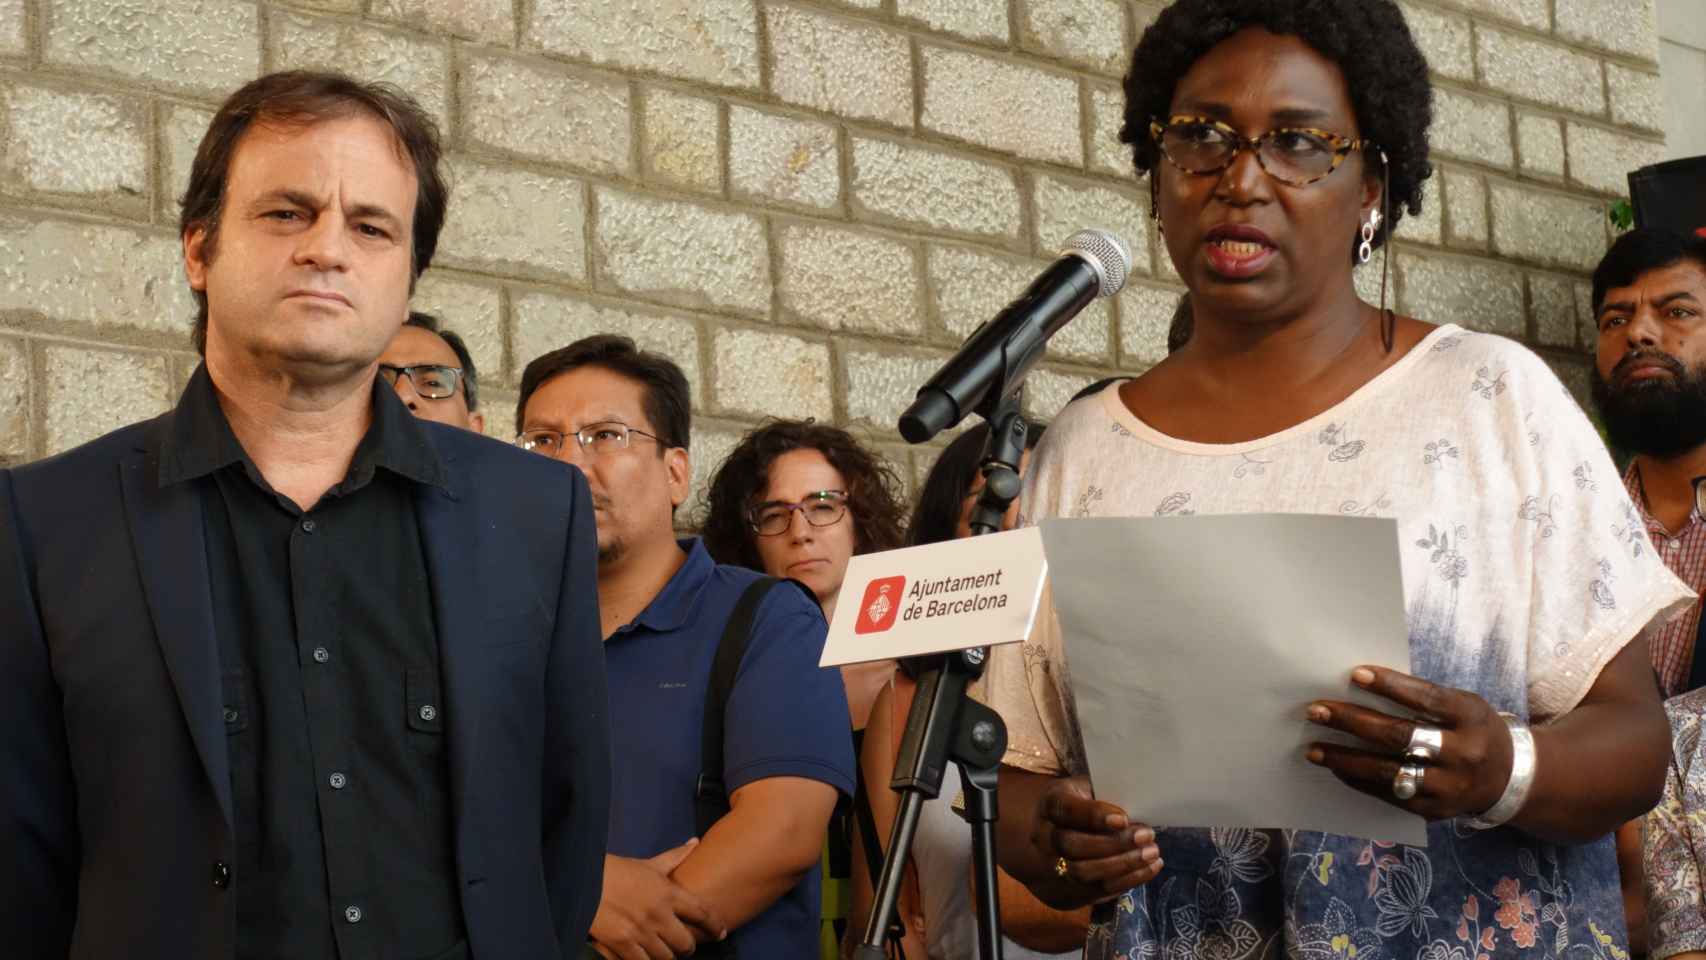 Las setenta entidades inmigrantes leen el manifiesto en el Ayuntamiento de Barcelona / DGM